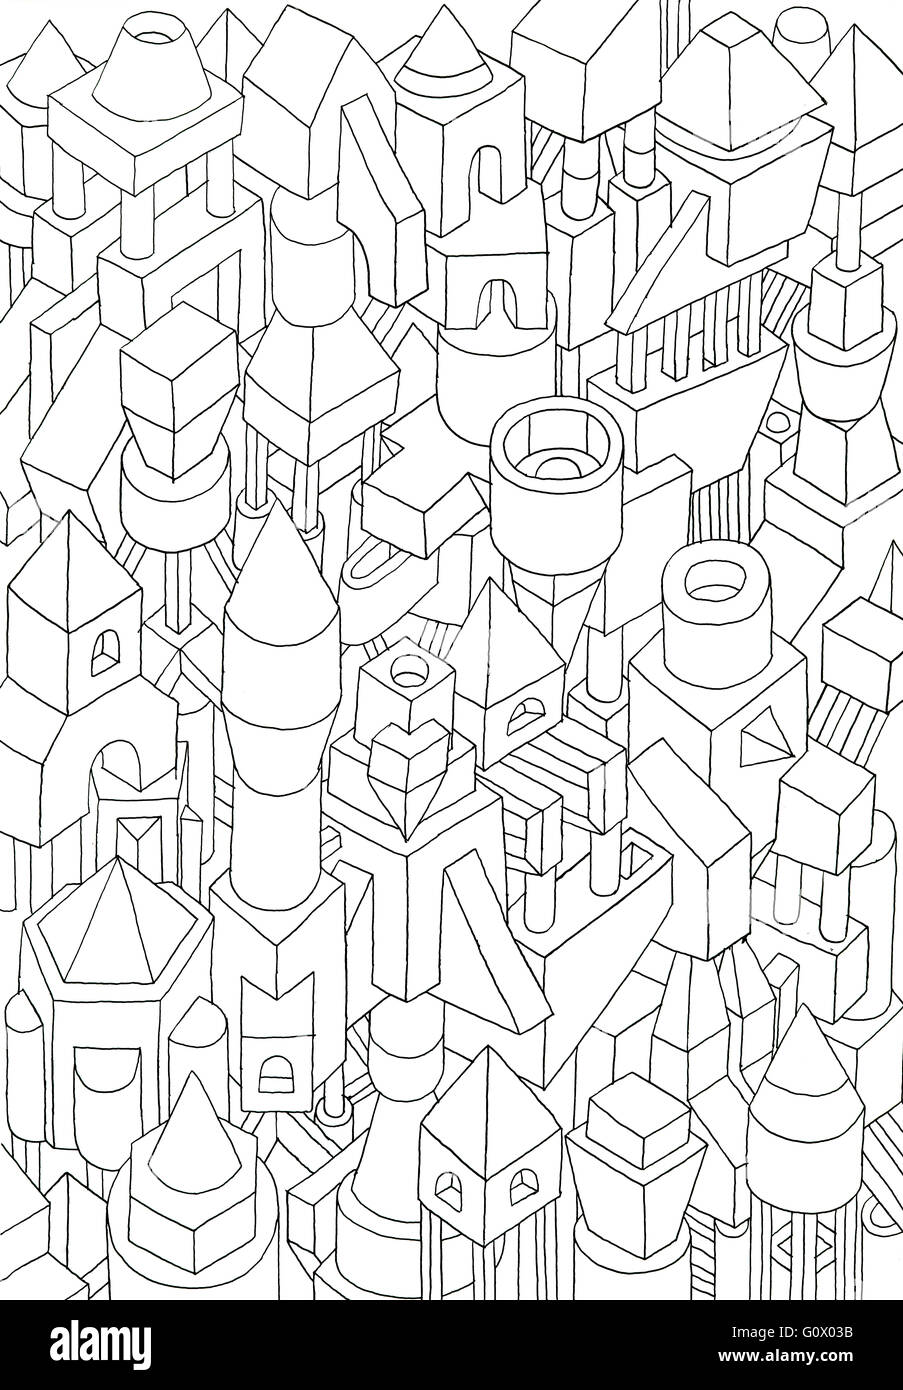 Las formas geométricas dibujadas con lápiz o tinta en cartoon, mermelada de formas y significados en una ciudad Foto de stock